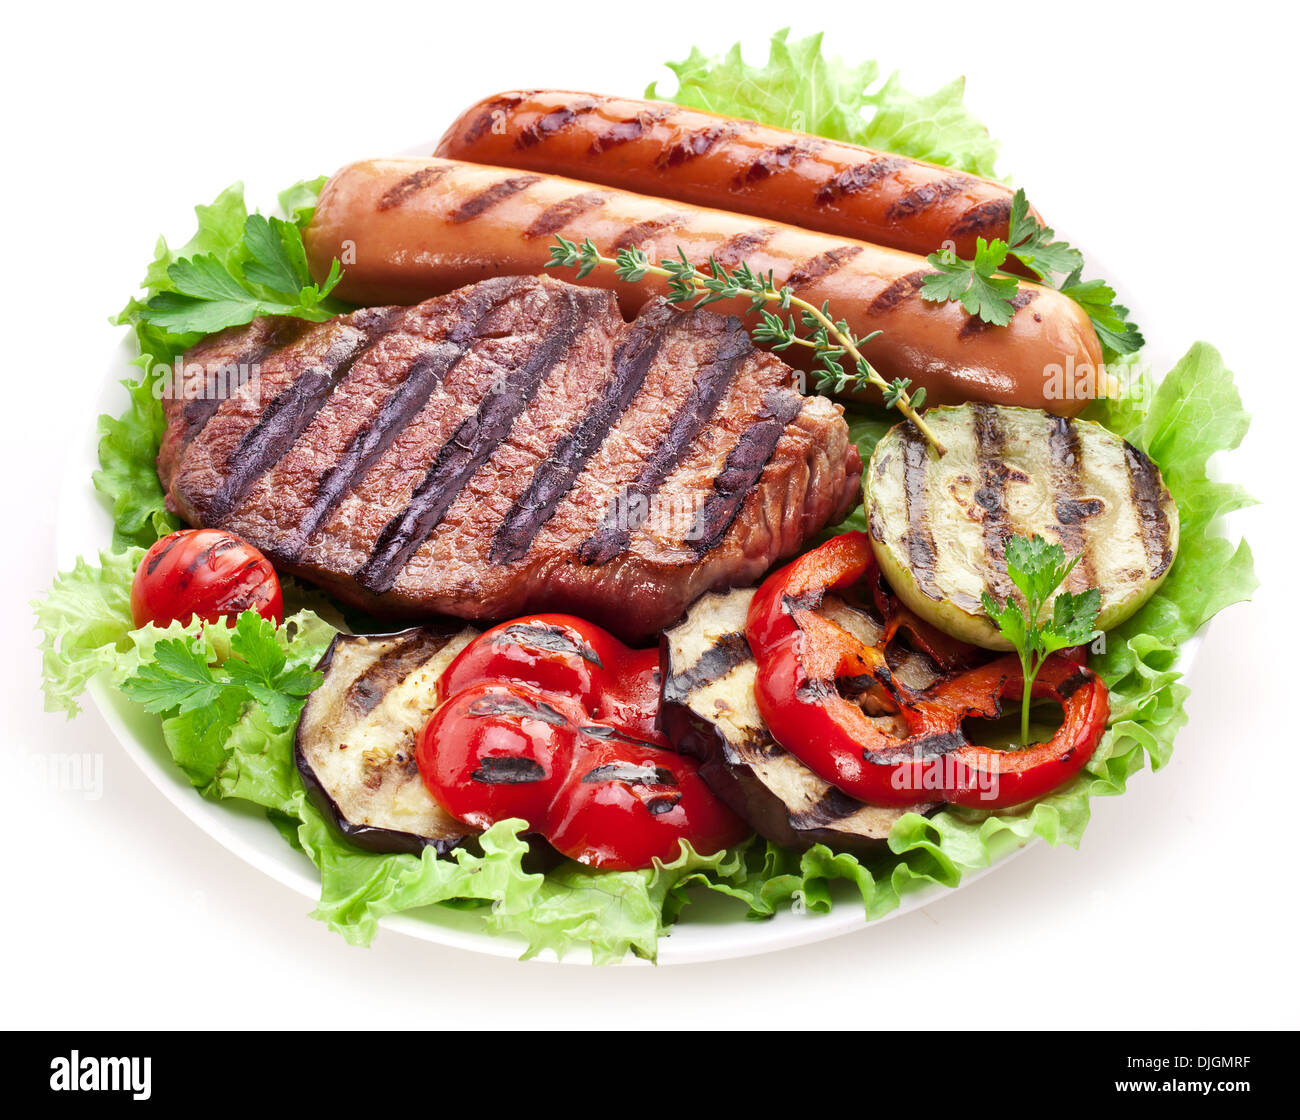 Le steak grillé, saucisses et légumes sur feuilles de laitue. Banque D'Images